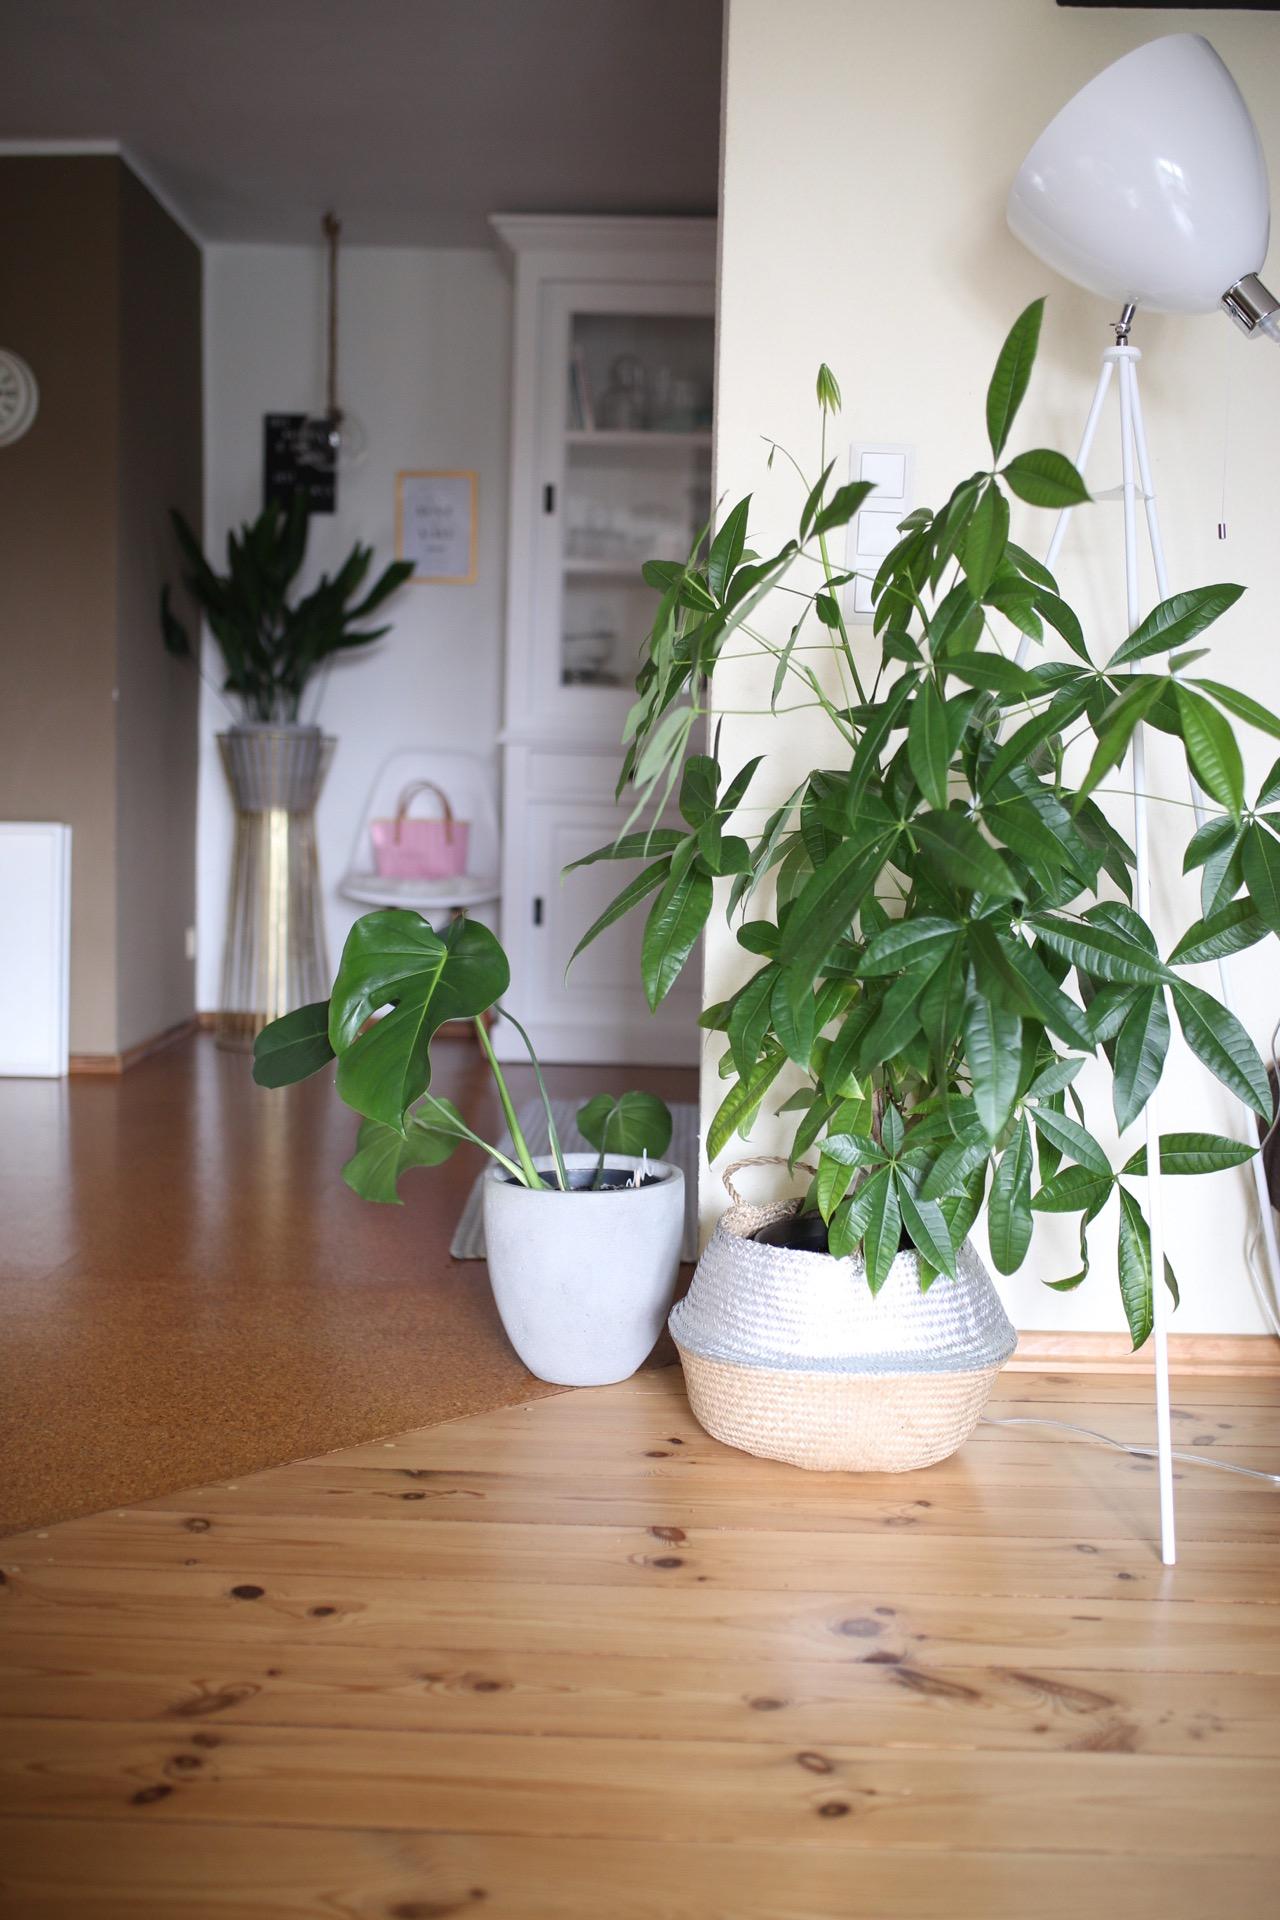 Wie ich es liebe in jedem Raum Pflanzen zu haben und ihnen beim wachsen zuzuschauen #urbanjungle #plantlover #plants